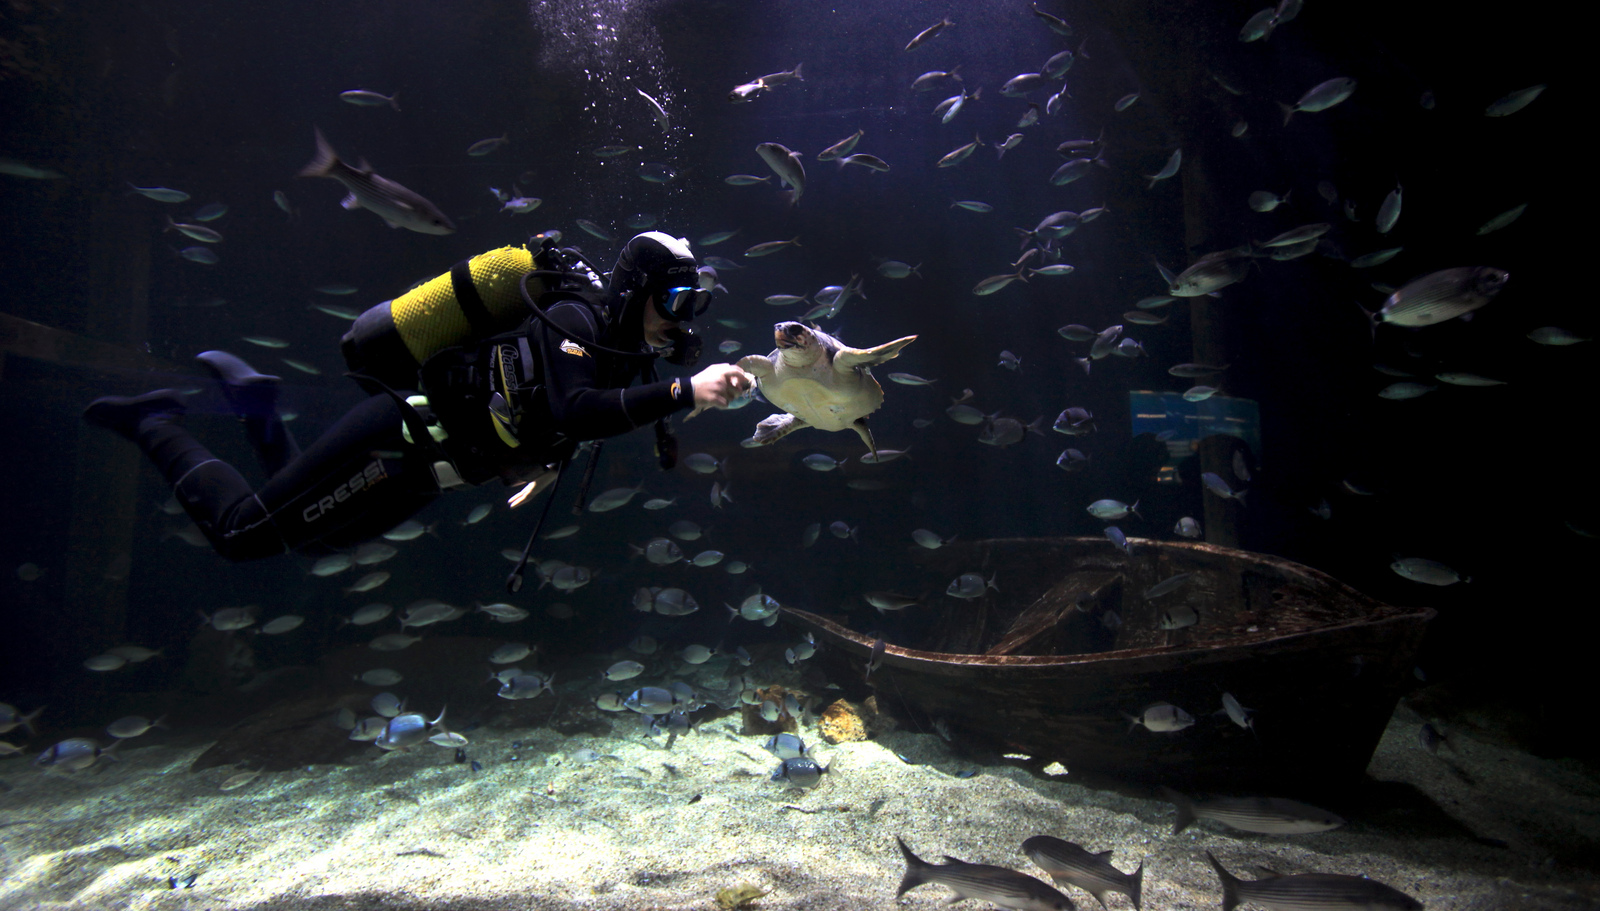 Buceando entre especies marinas en el Oceanogràfic de Valencia. Autor, Ciudad de las Artes y las Ciencias